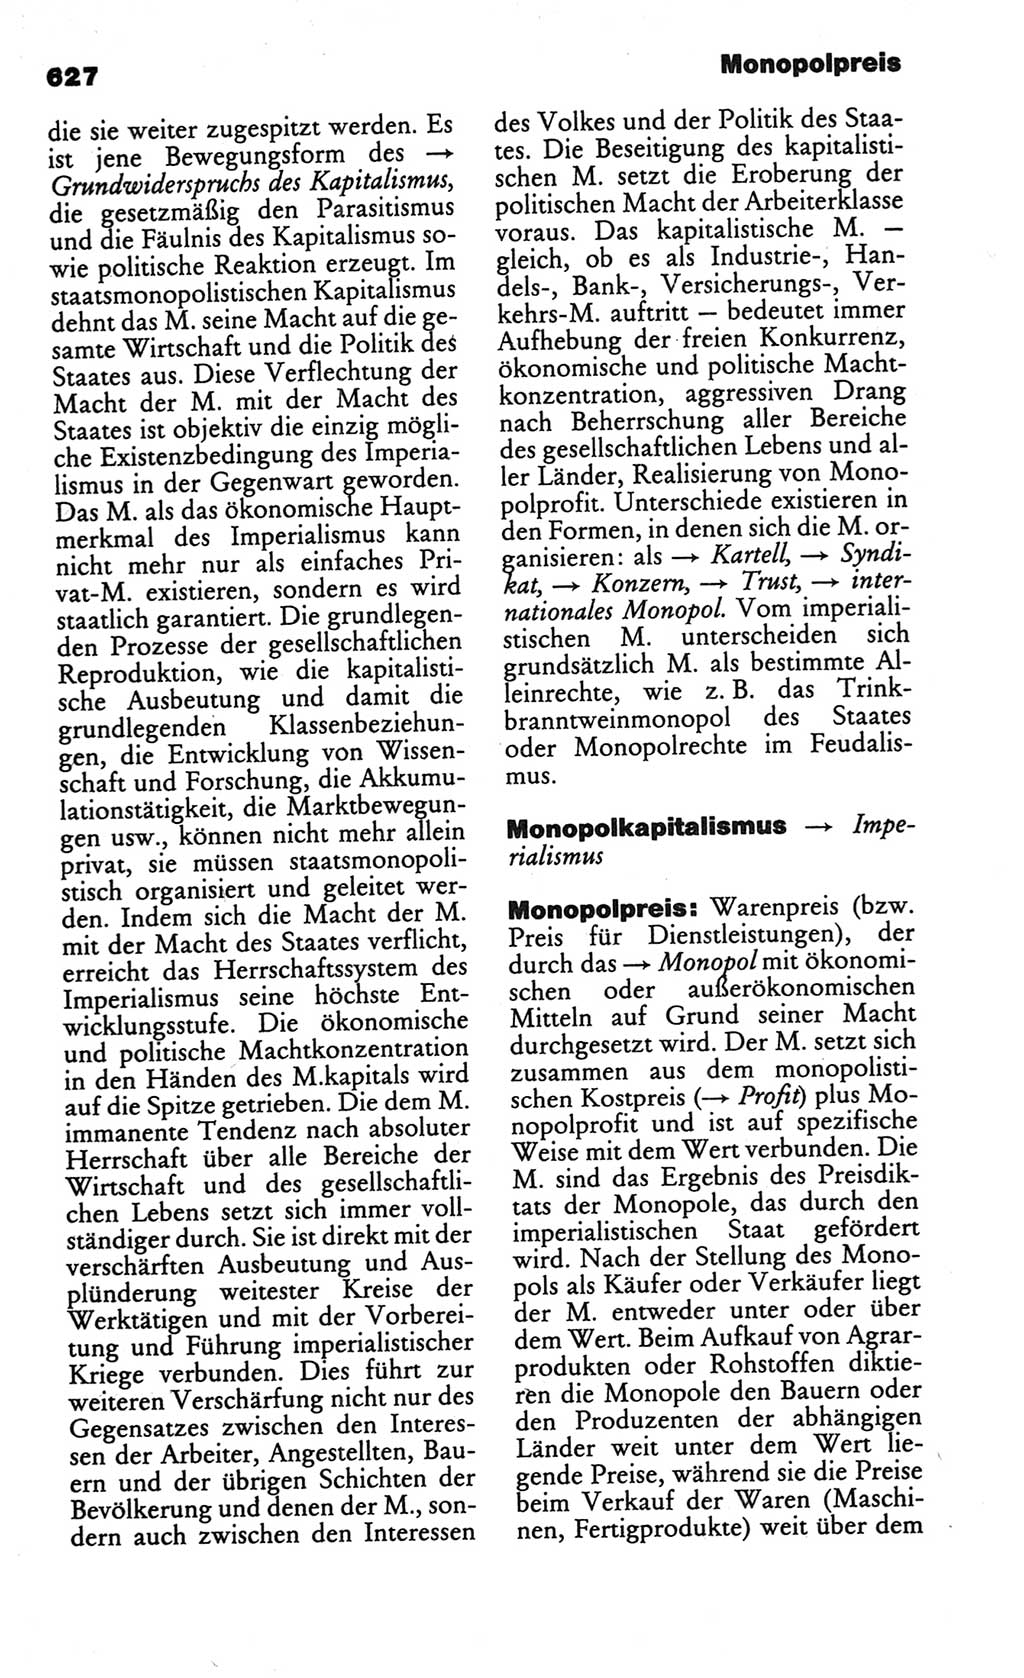 Kleines politisches Wörterbuch [Deutsche Demokratische Republik (DDR)] 1986, Seite 627 (Kl. pol. Wb. DDR 1986, S. 627)